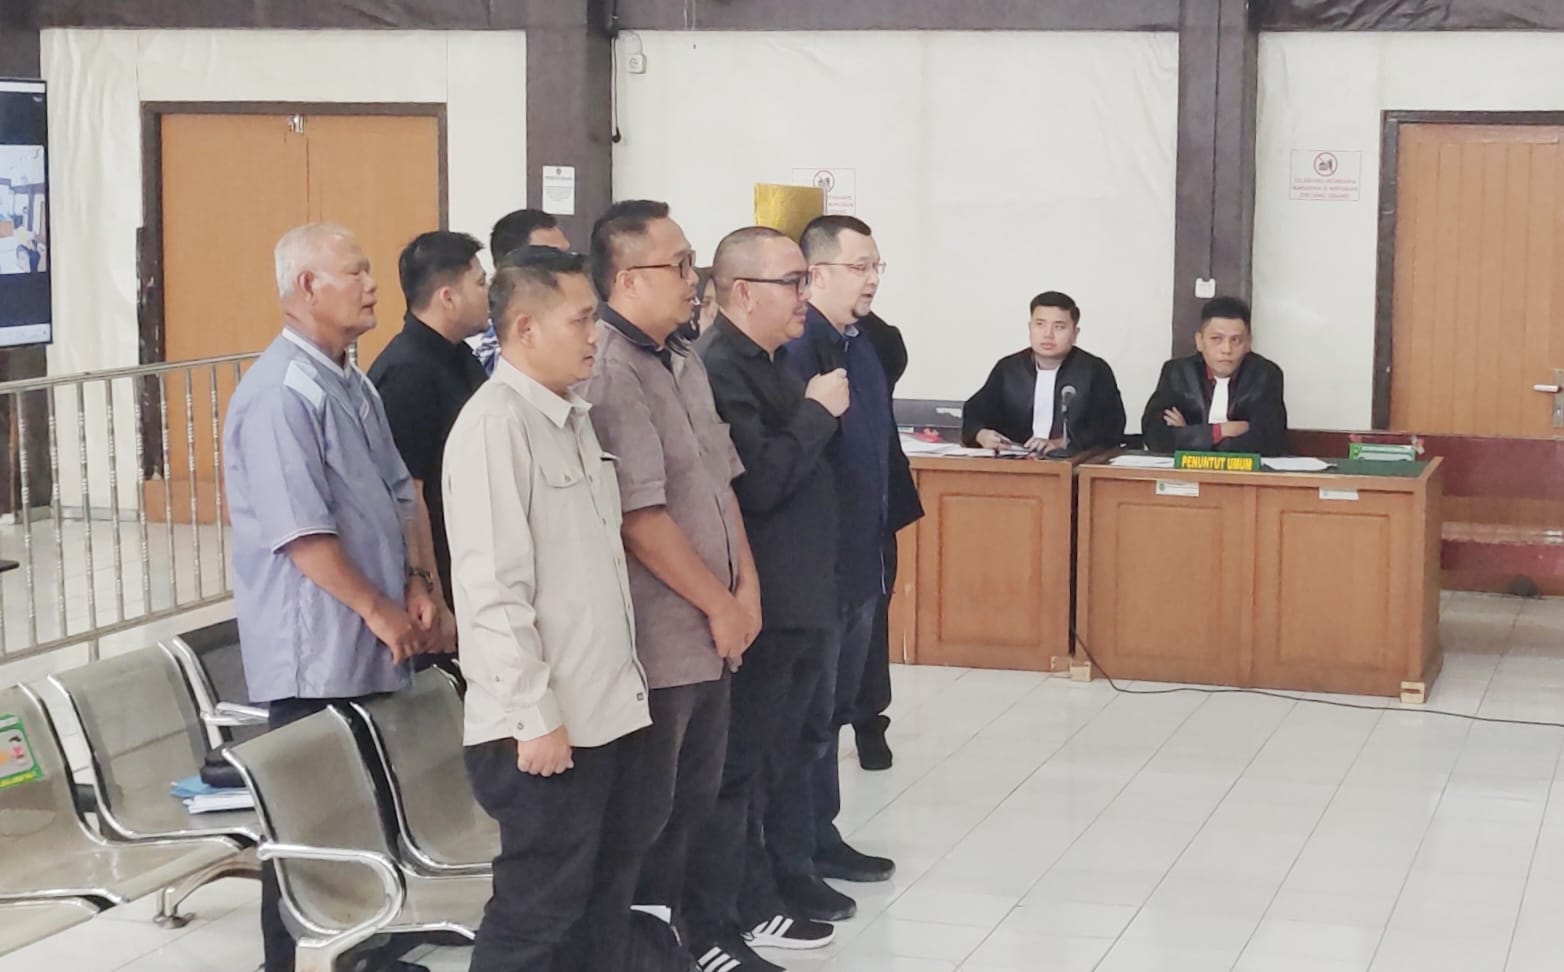 Sidang Kasus Korupsi Penyertaan Modal BUMD Pemkab Muara Enim, Jaksa Hadirkan HZ Sebagai Saksi